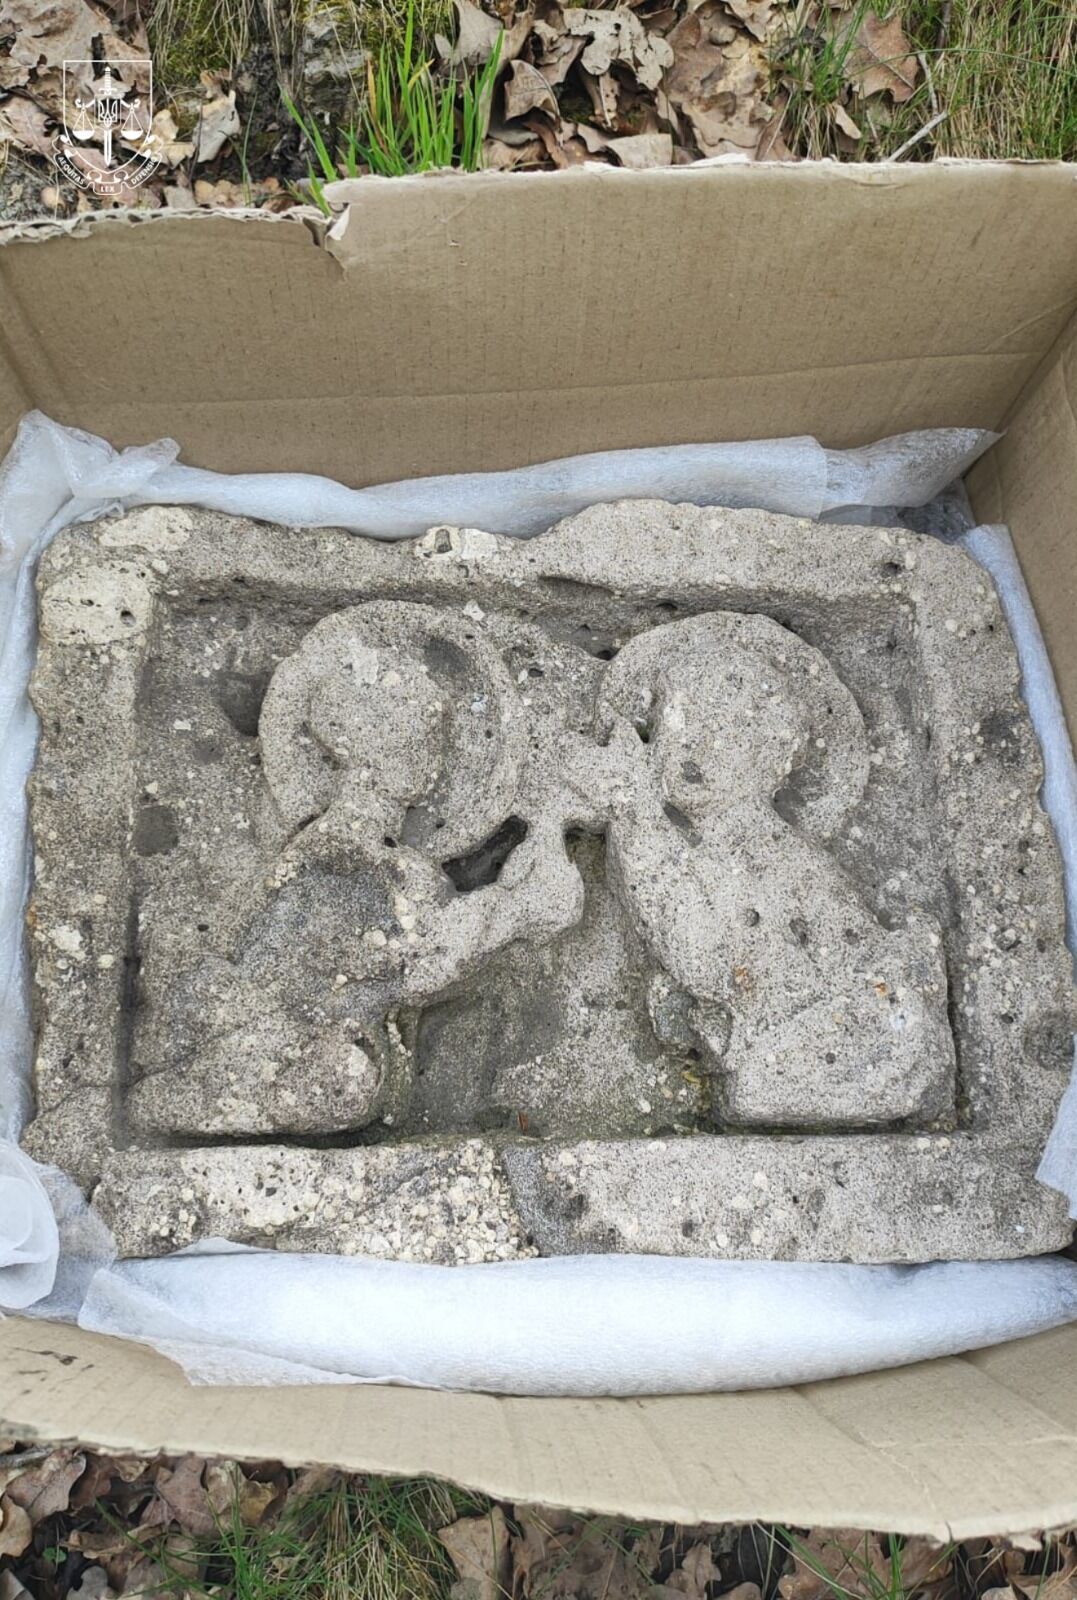 На Волині знайшли двох ангелів часів Київської Русі. Фото історичної пам'ятки